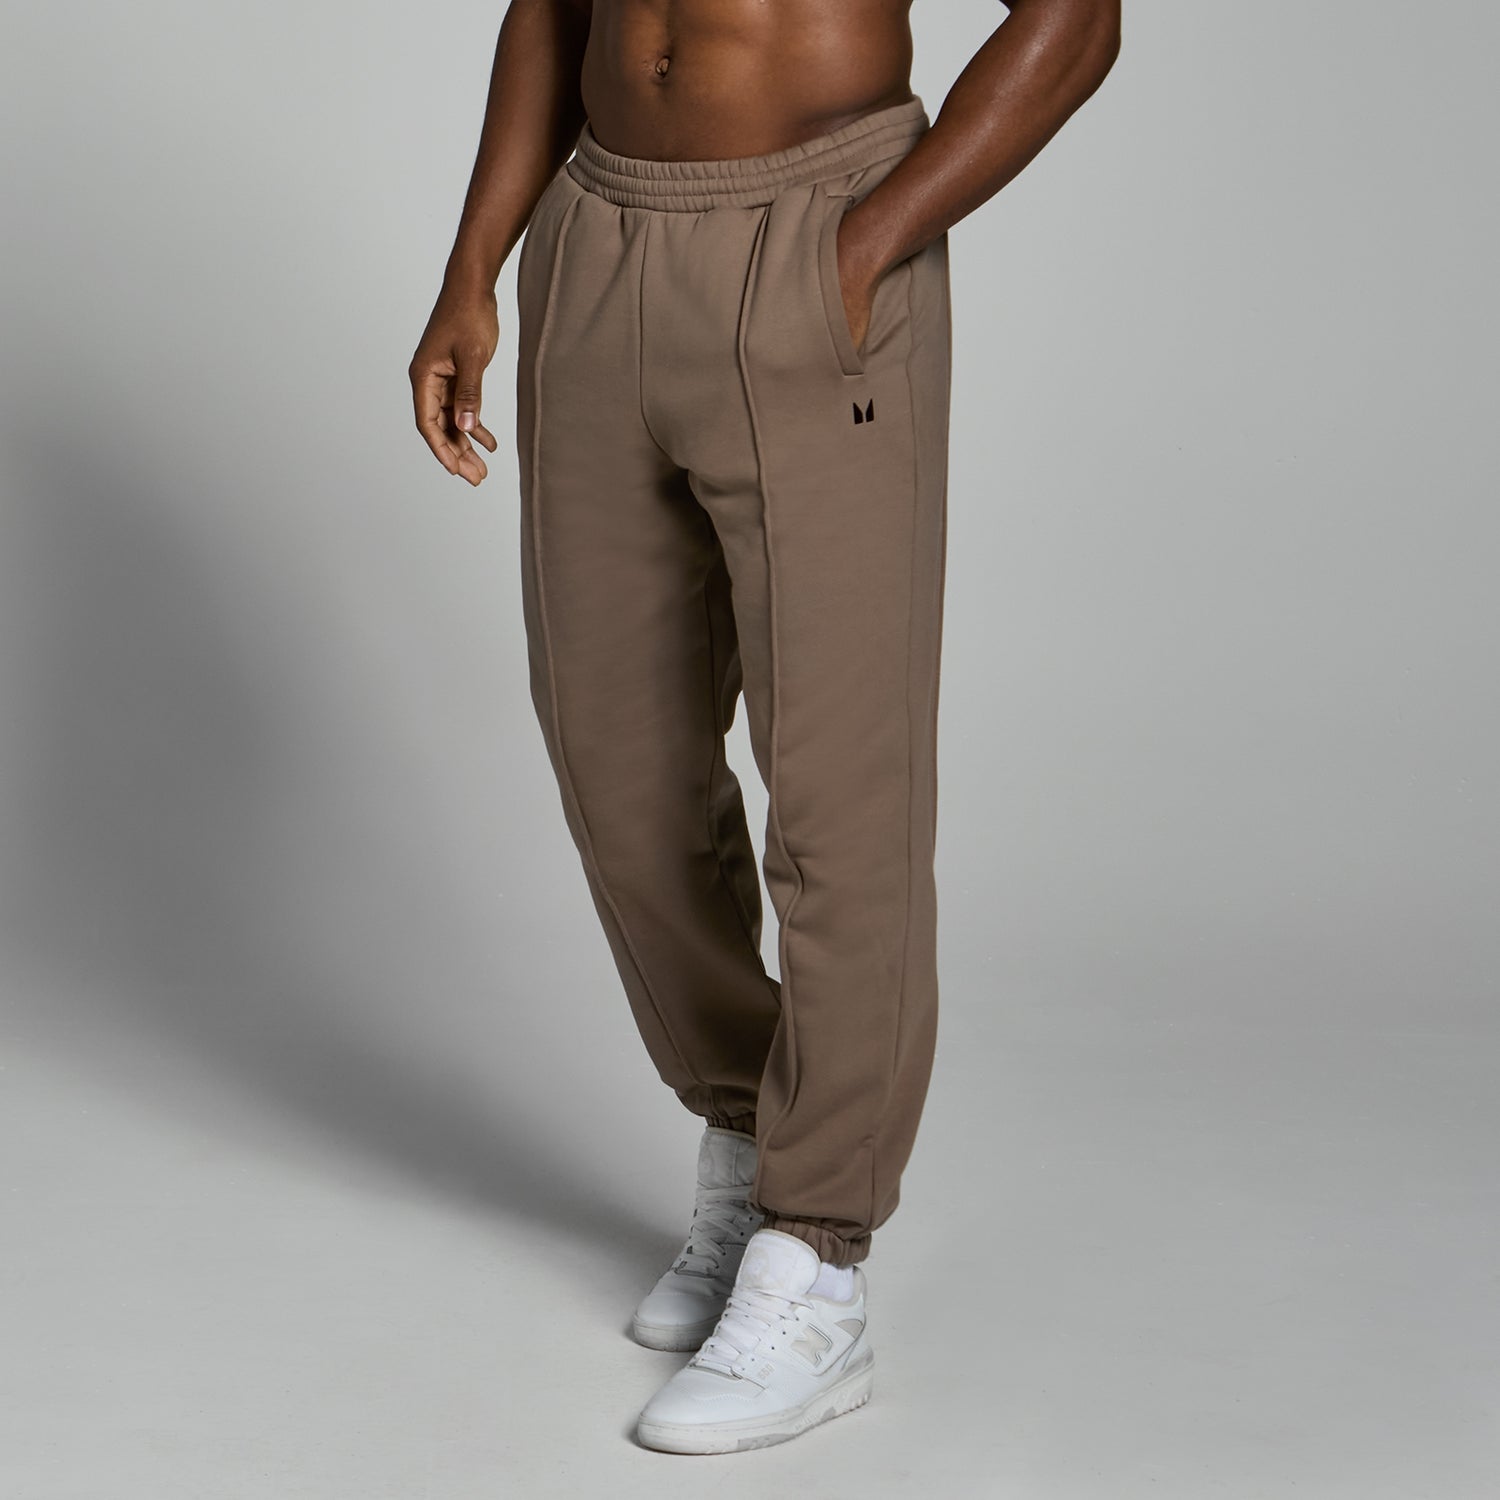 Pantaloni da jogging pesanti oversize MP Lifestyle da uomo - Marrone chiaro - XS